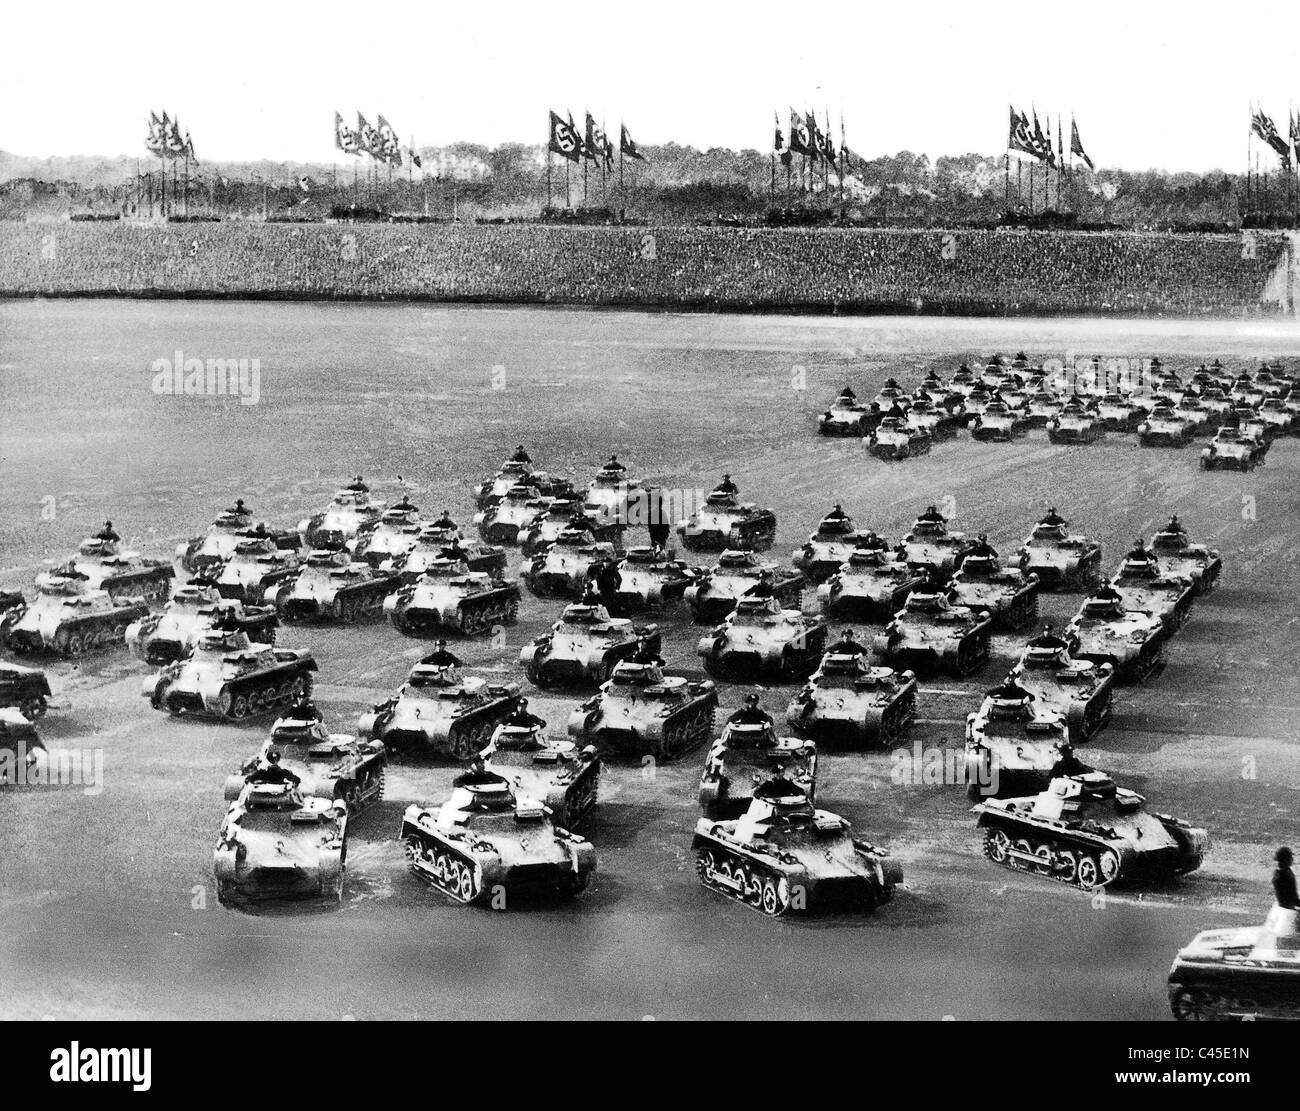 Tanks parading on the Nuremberg Rally 1936 Stock Photo